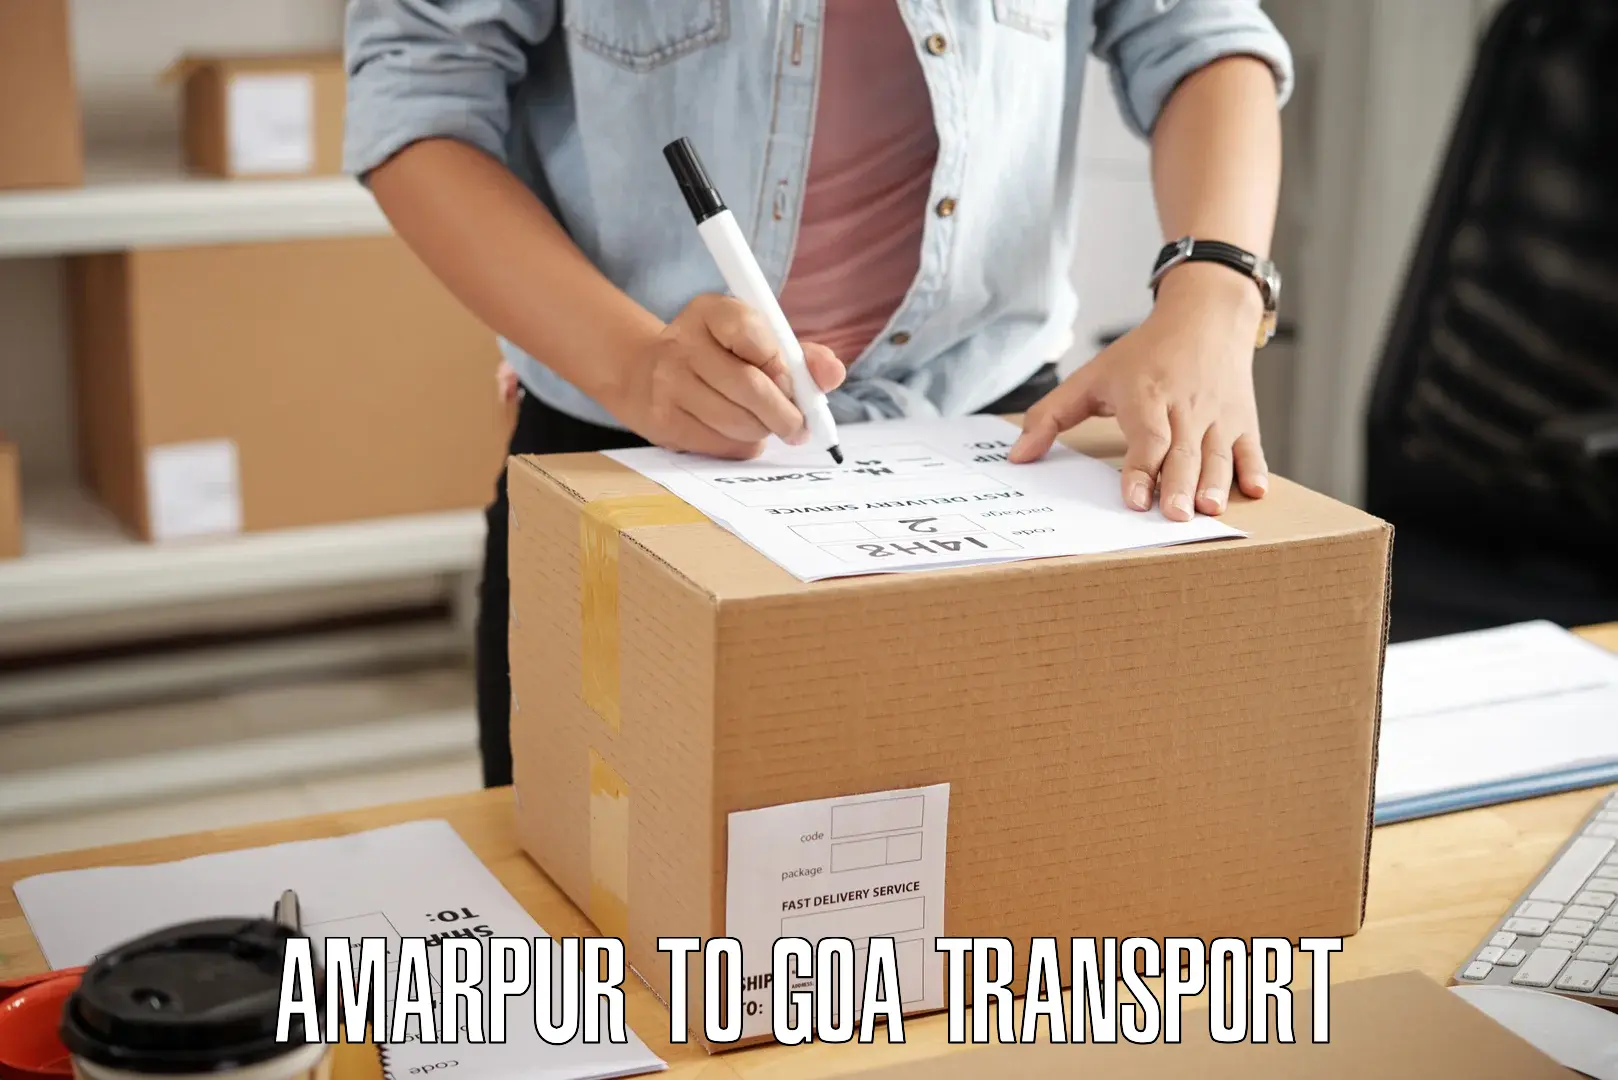 Container transportation services Amarpur to Vasco da Gama